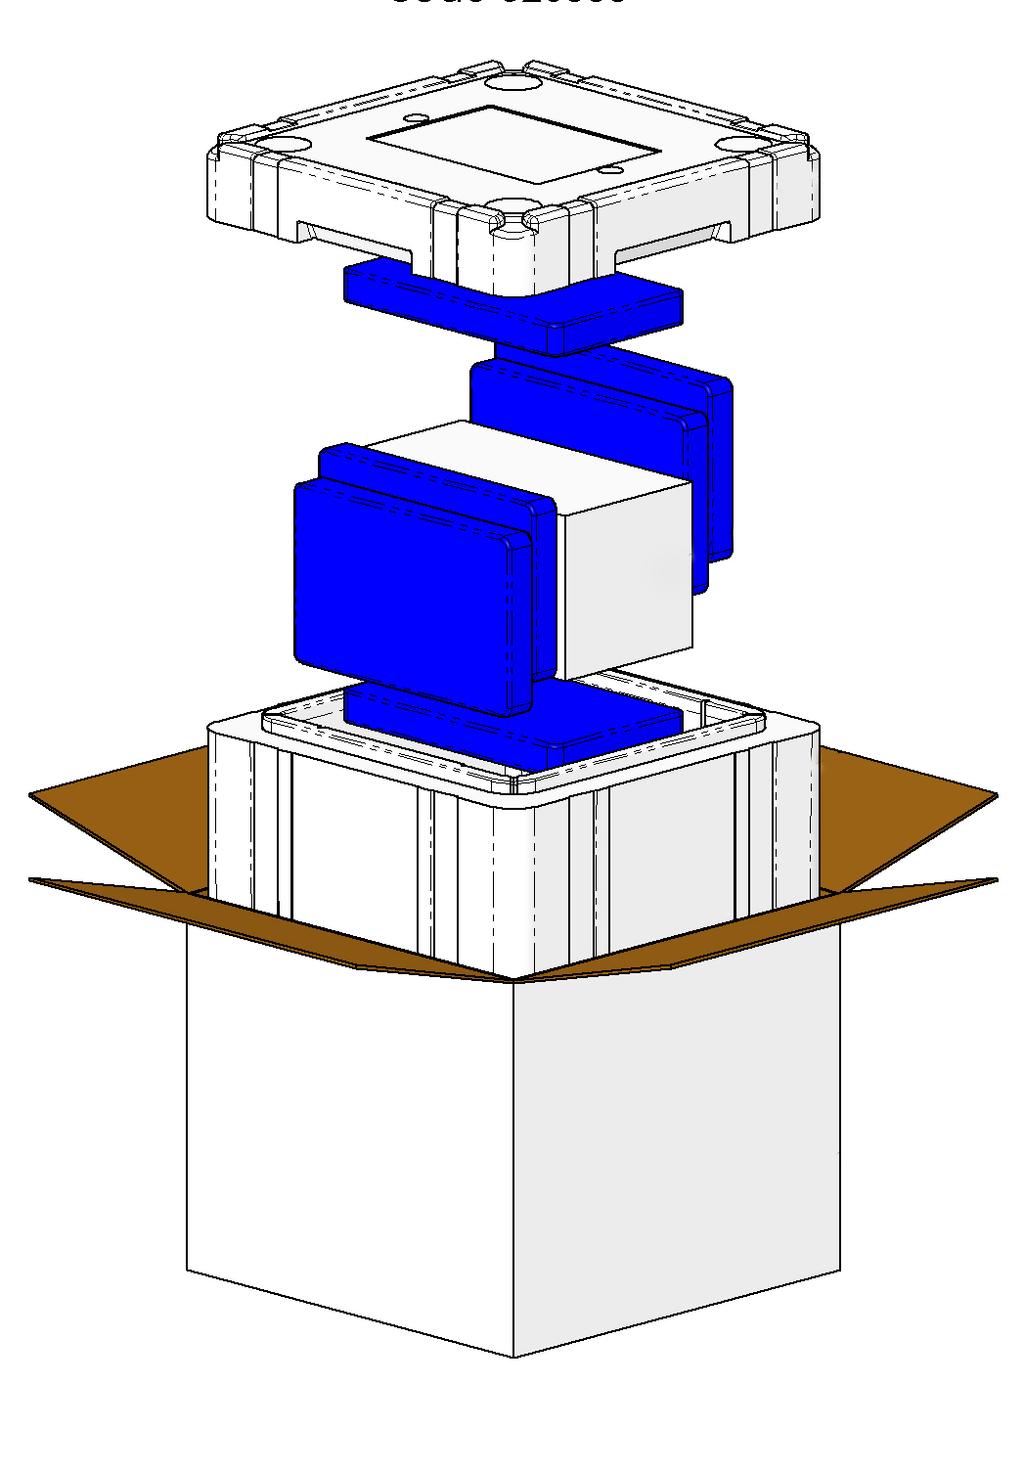 Systembox mit 5 l Nutzvolumen Die Ausführung mit 5 Liter Nutzvolumen ist die kleinste Box im Sortiment der 48h-Systemlösungen.